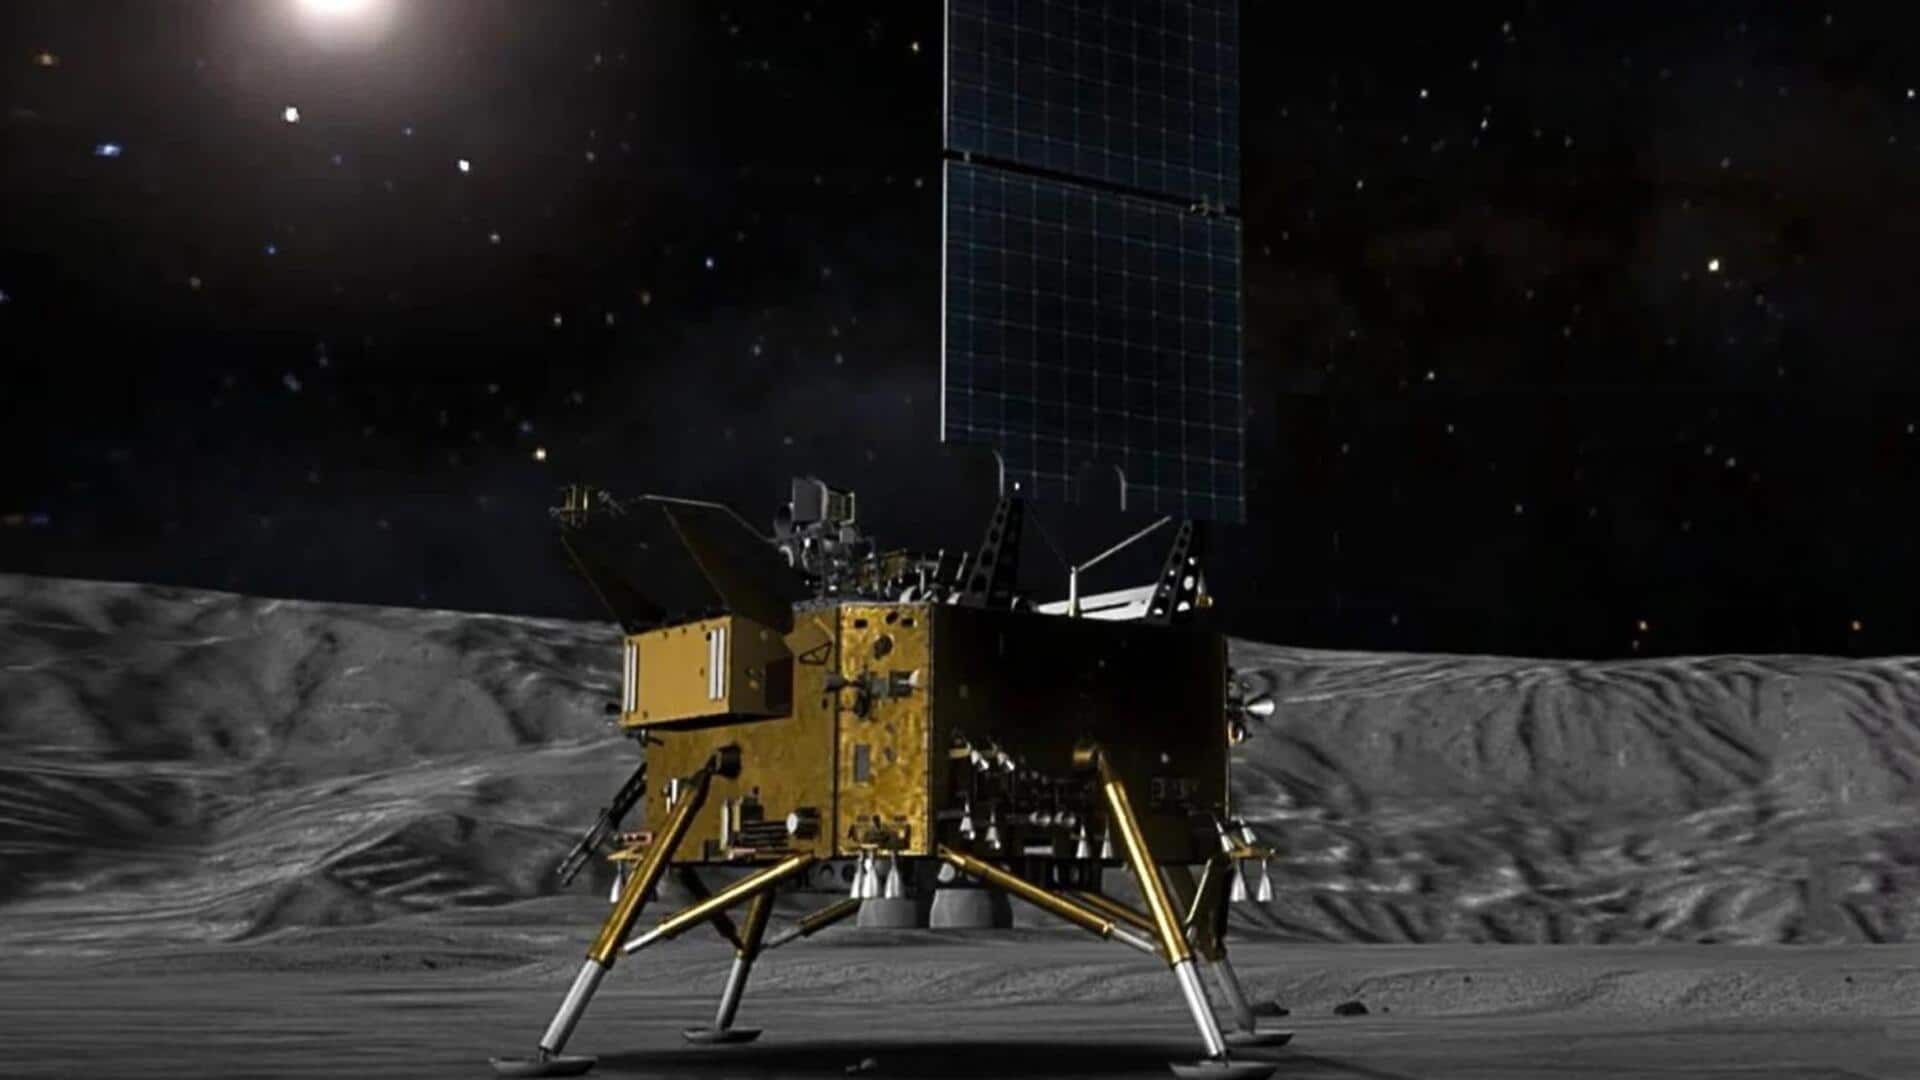 चीन के चांग ई 8 मिशन की तैयारी तेज, चांद पर उतरने की है योजना